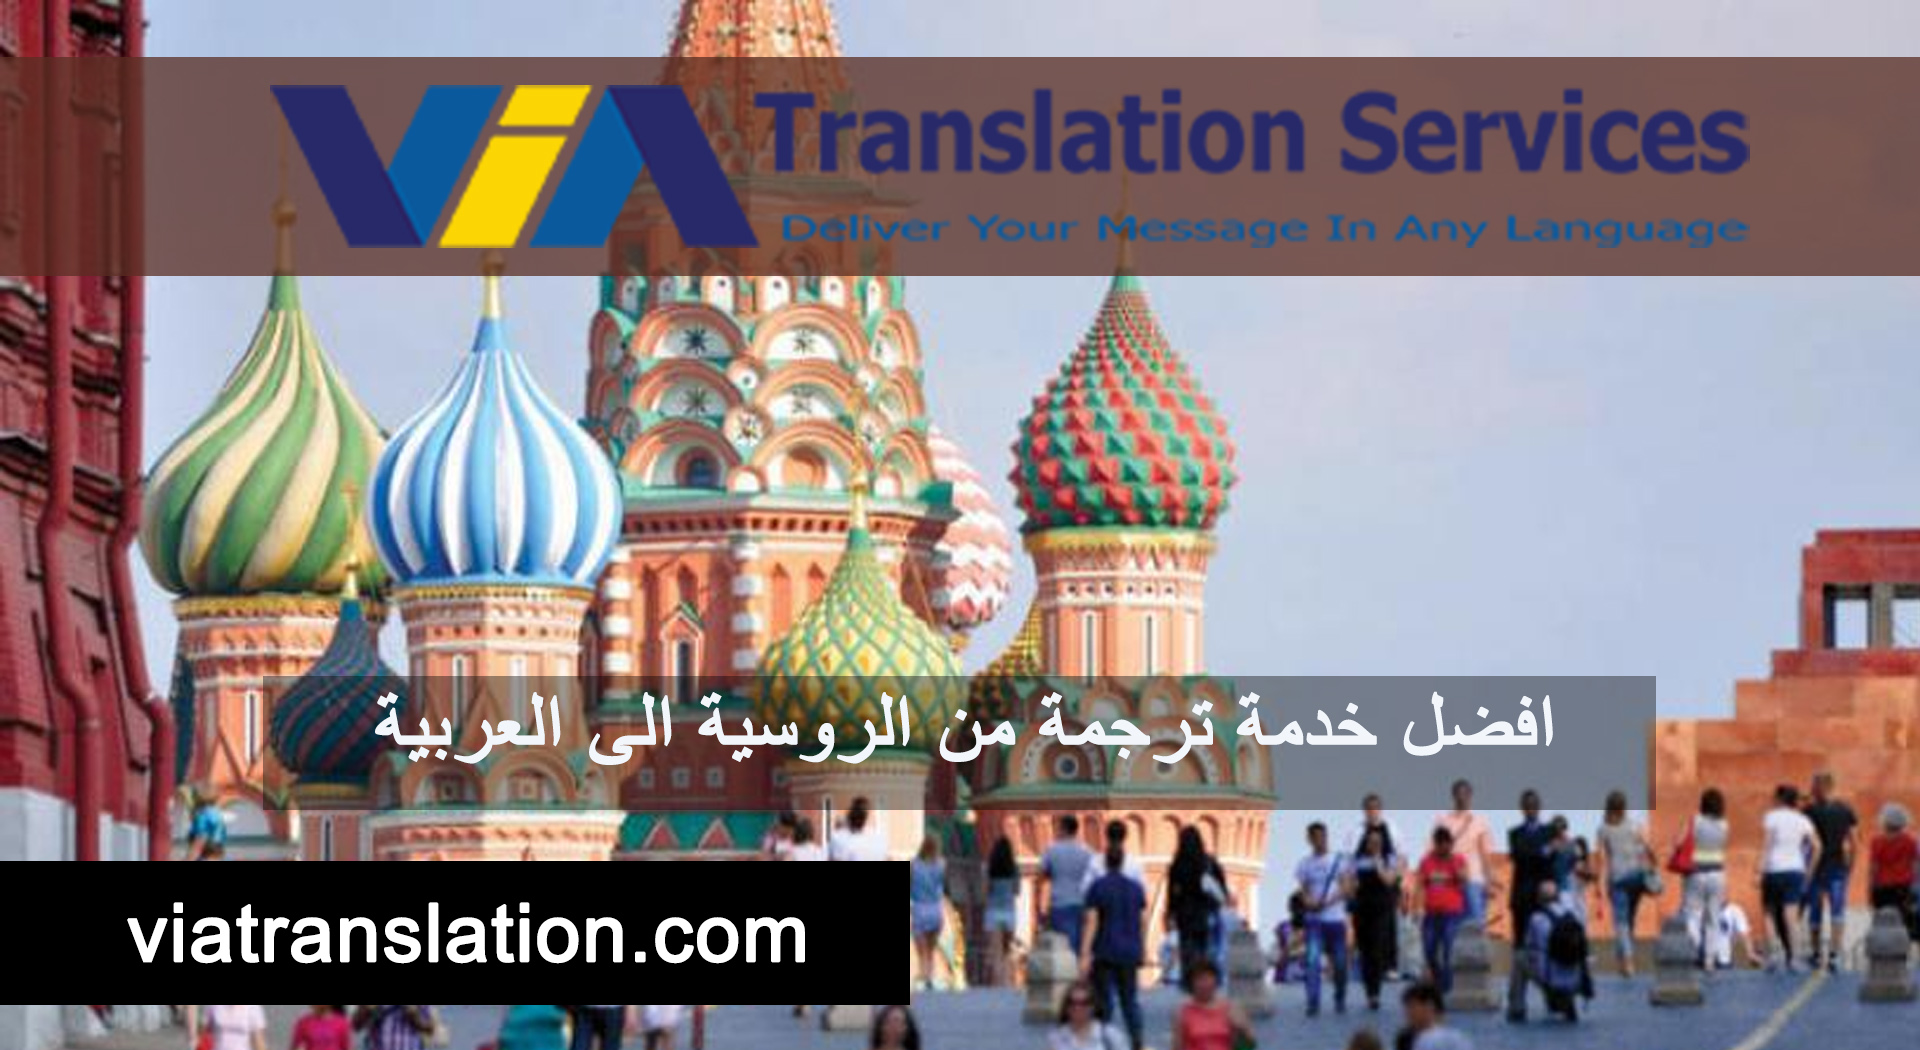 افضل خدمة ترجمة من الروسية الى العربية